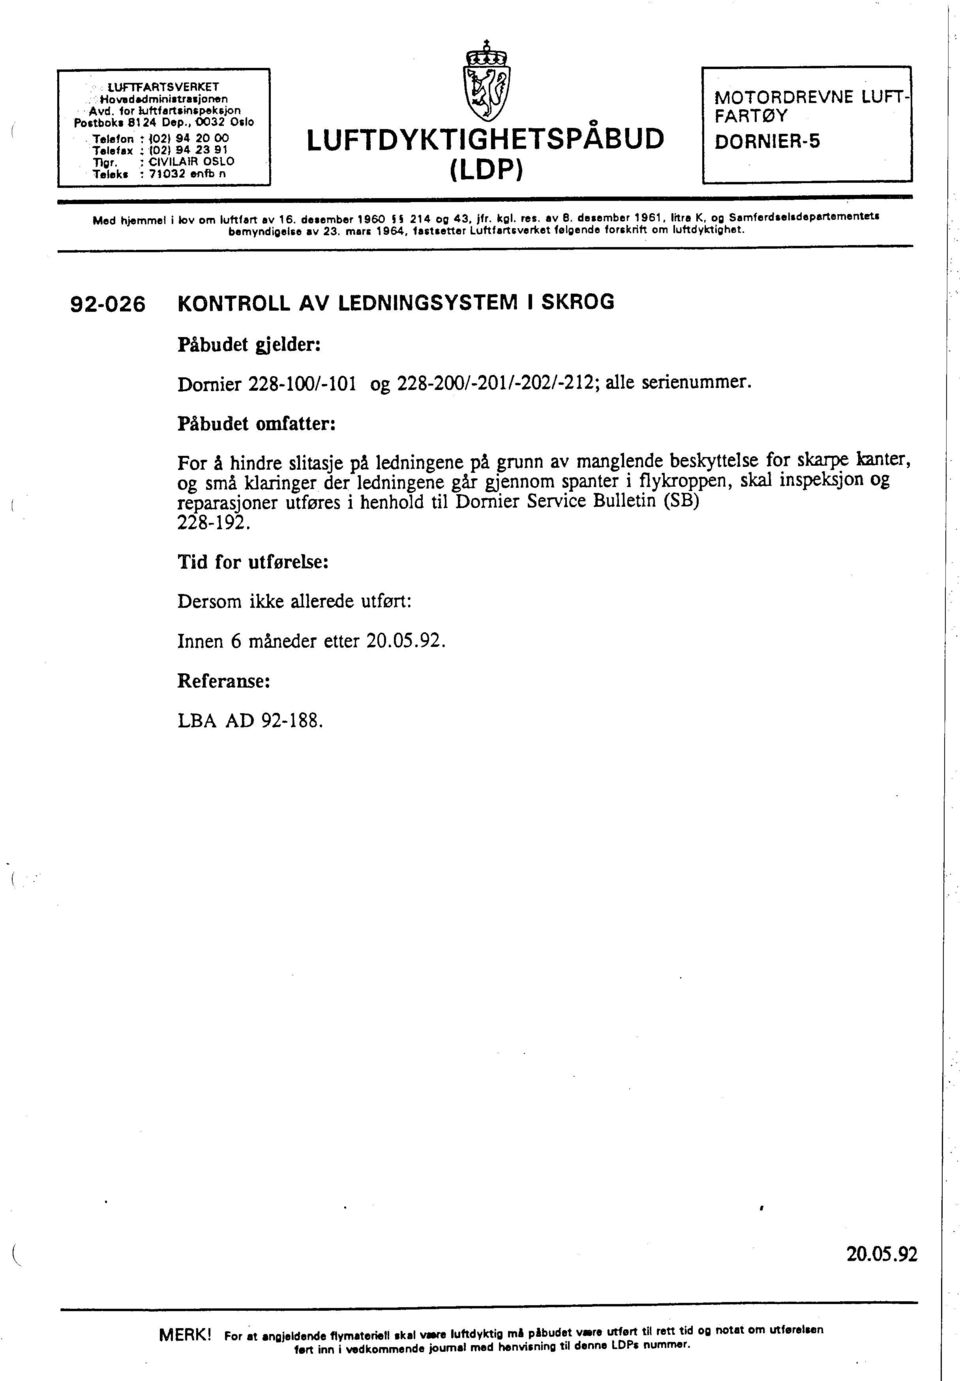 dnember, 961, litra K, og Samferdselsdepertementeti bemyndigelse aii 23. mars' 964, fastsetter Luftfartiveriet følgende forskrift om luftdyktighet.